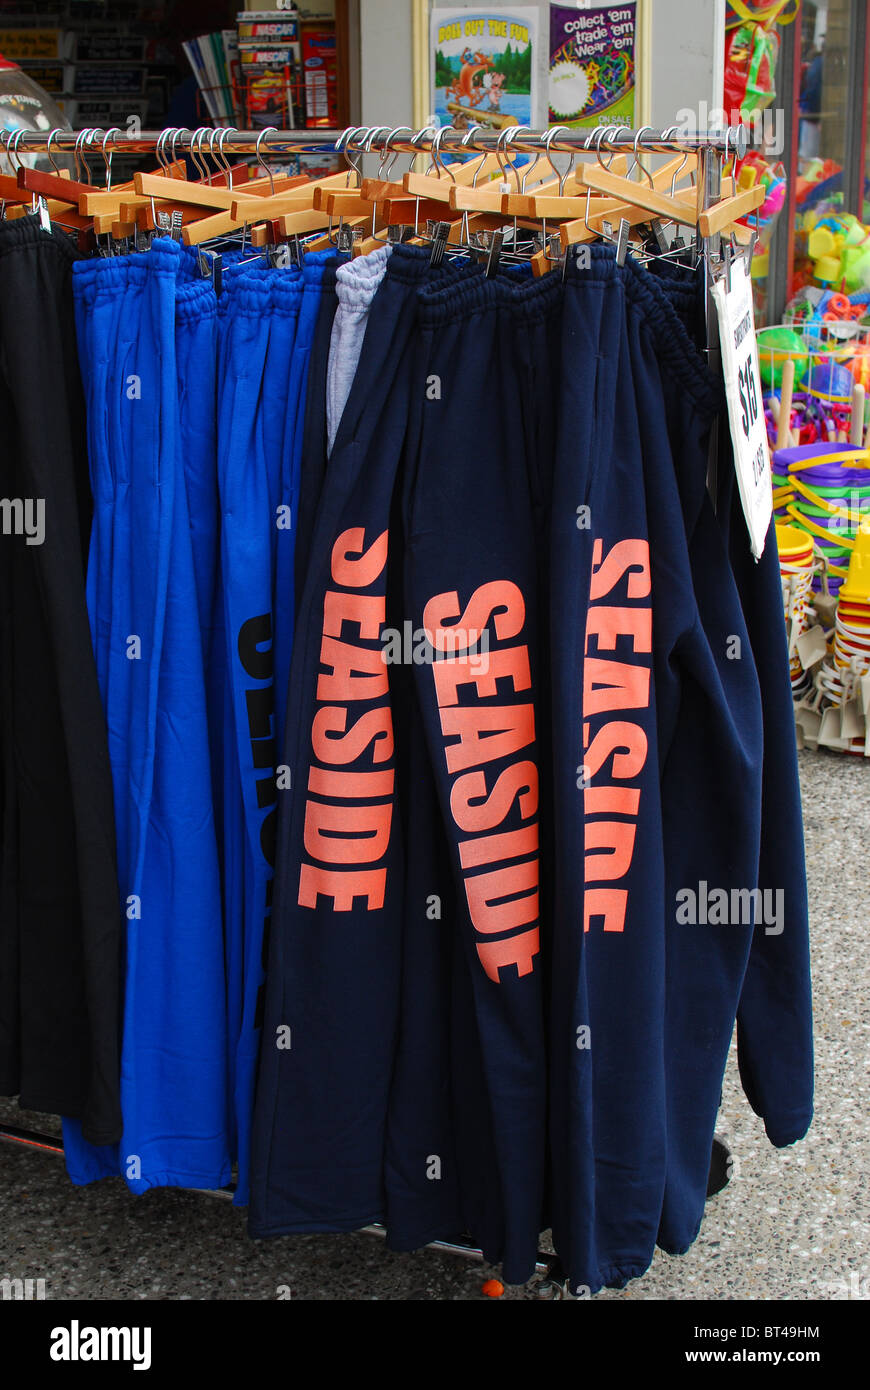 Tienda en la playa, Oregon, pantalones de que venden recuerdos Fotografía de stock Alamy